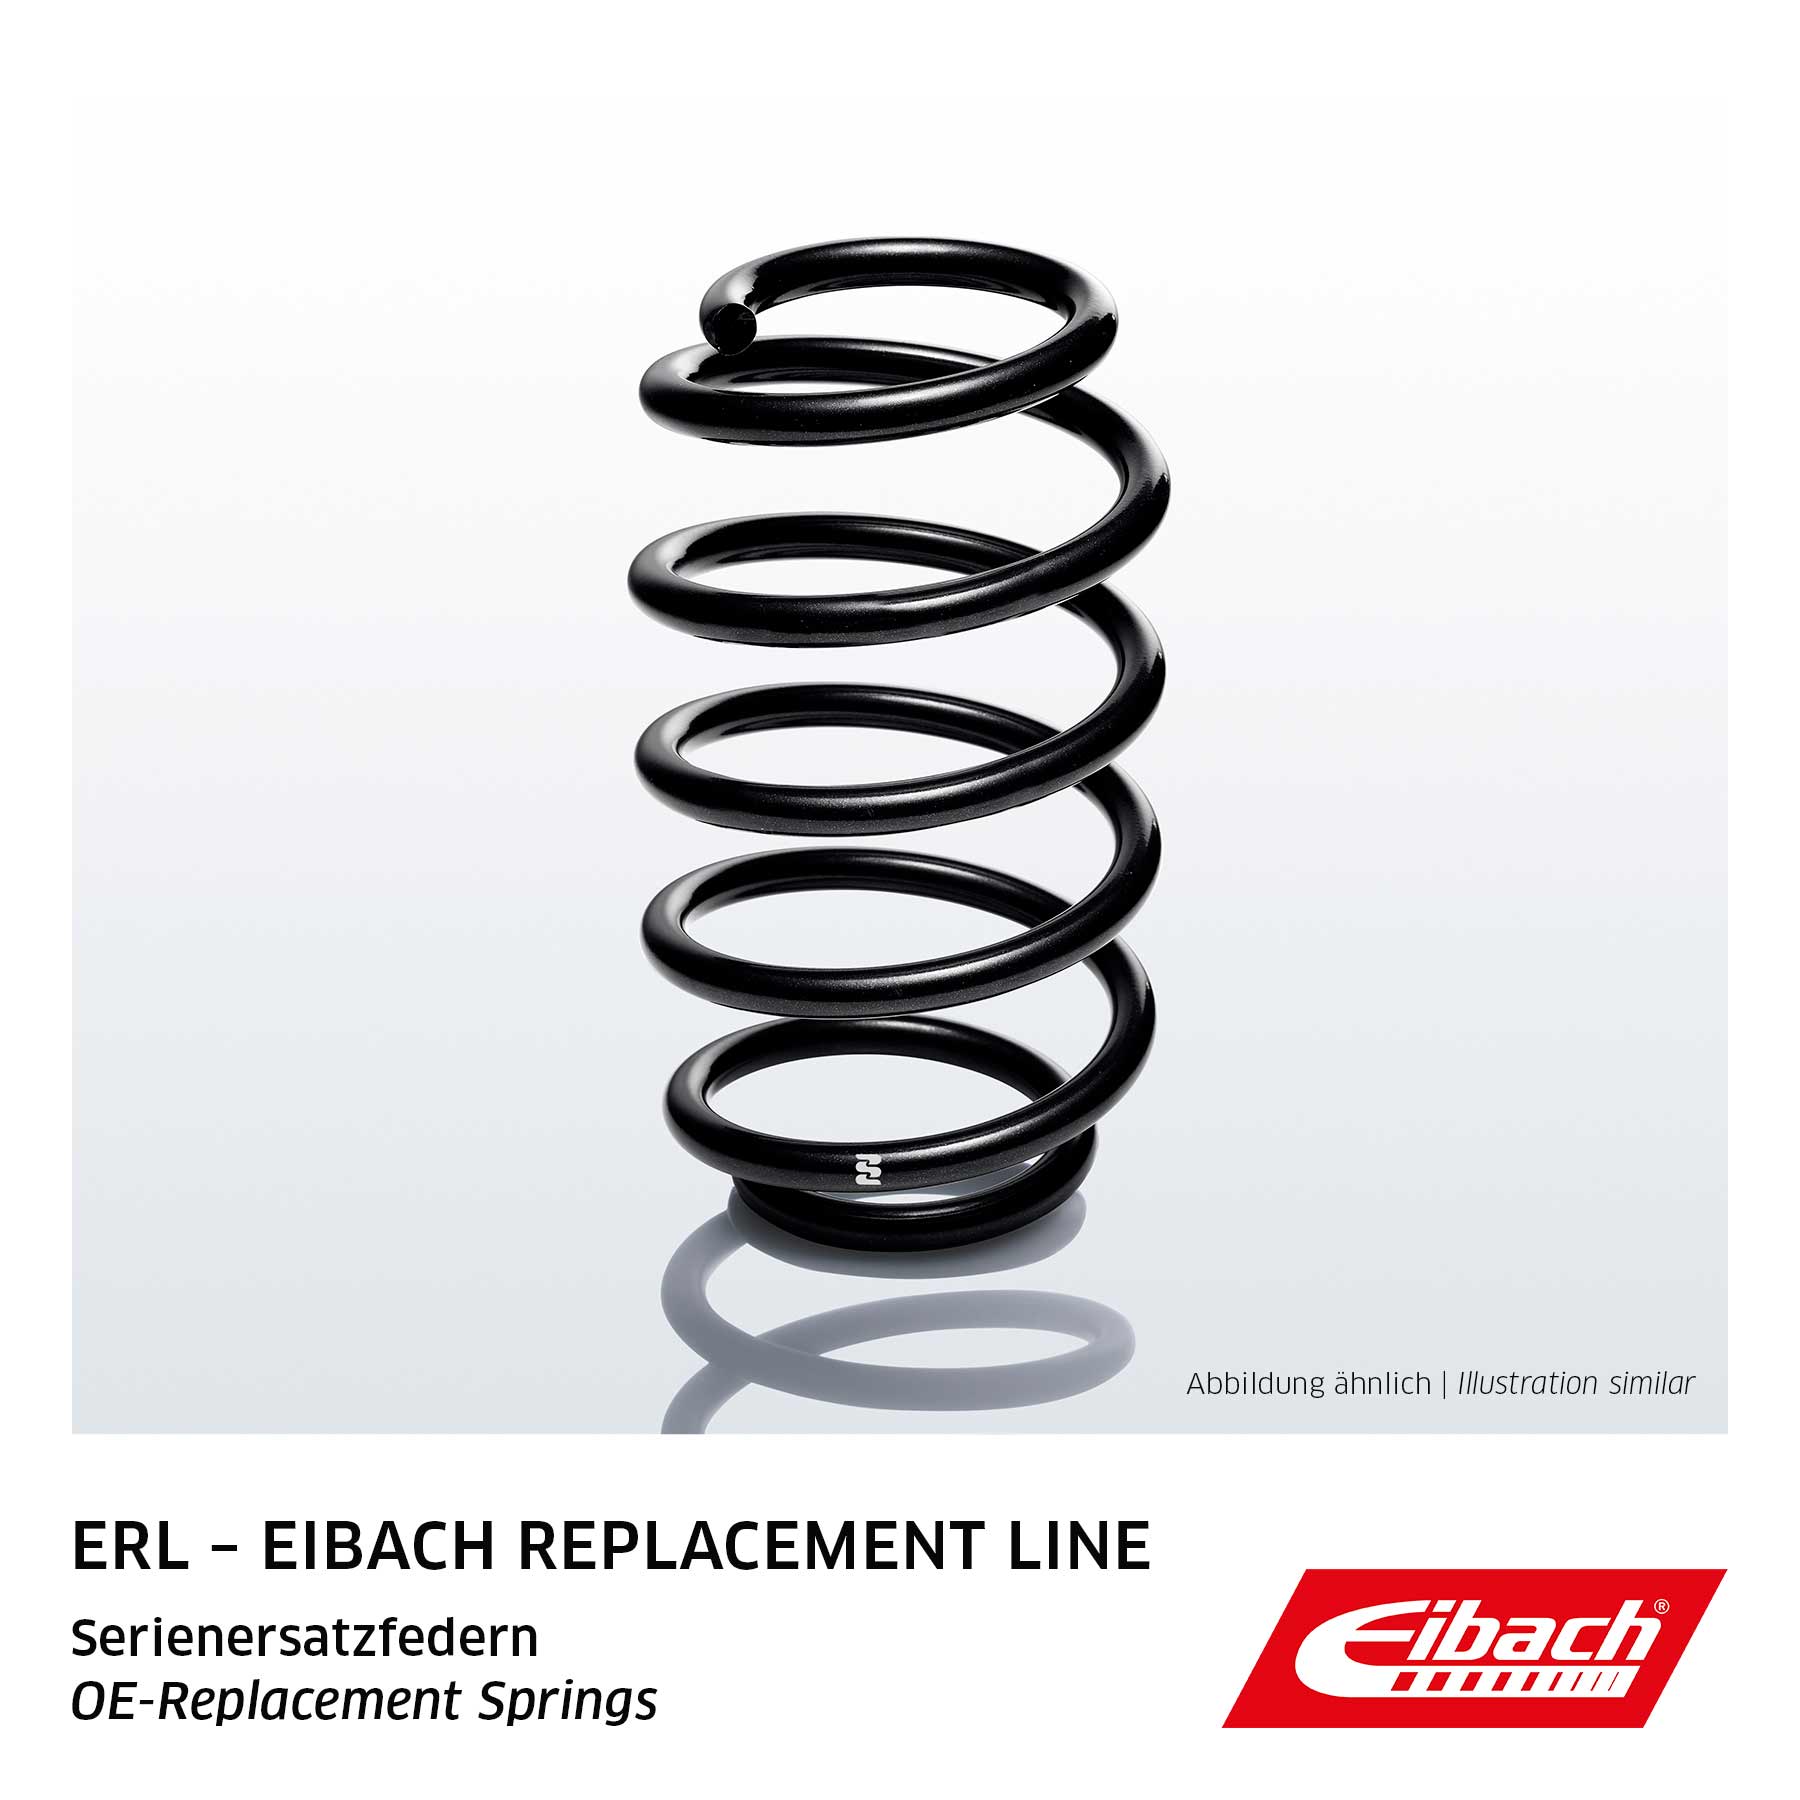 Ressort de suspension EIBACH, par ex. pour VW, Audi, Skoda, Seat